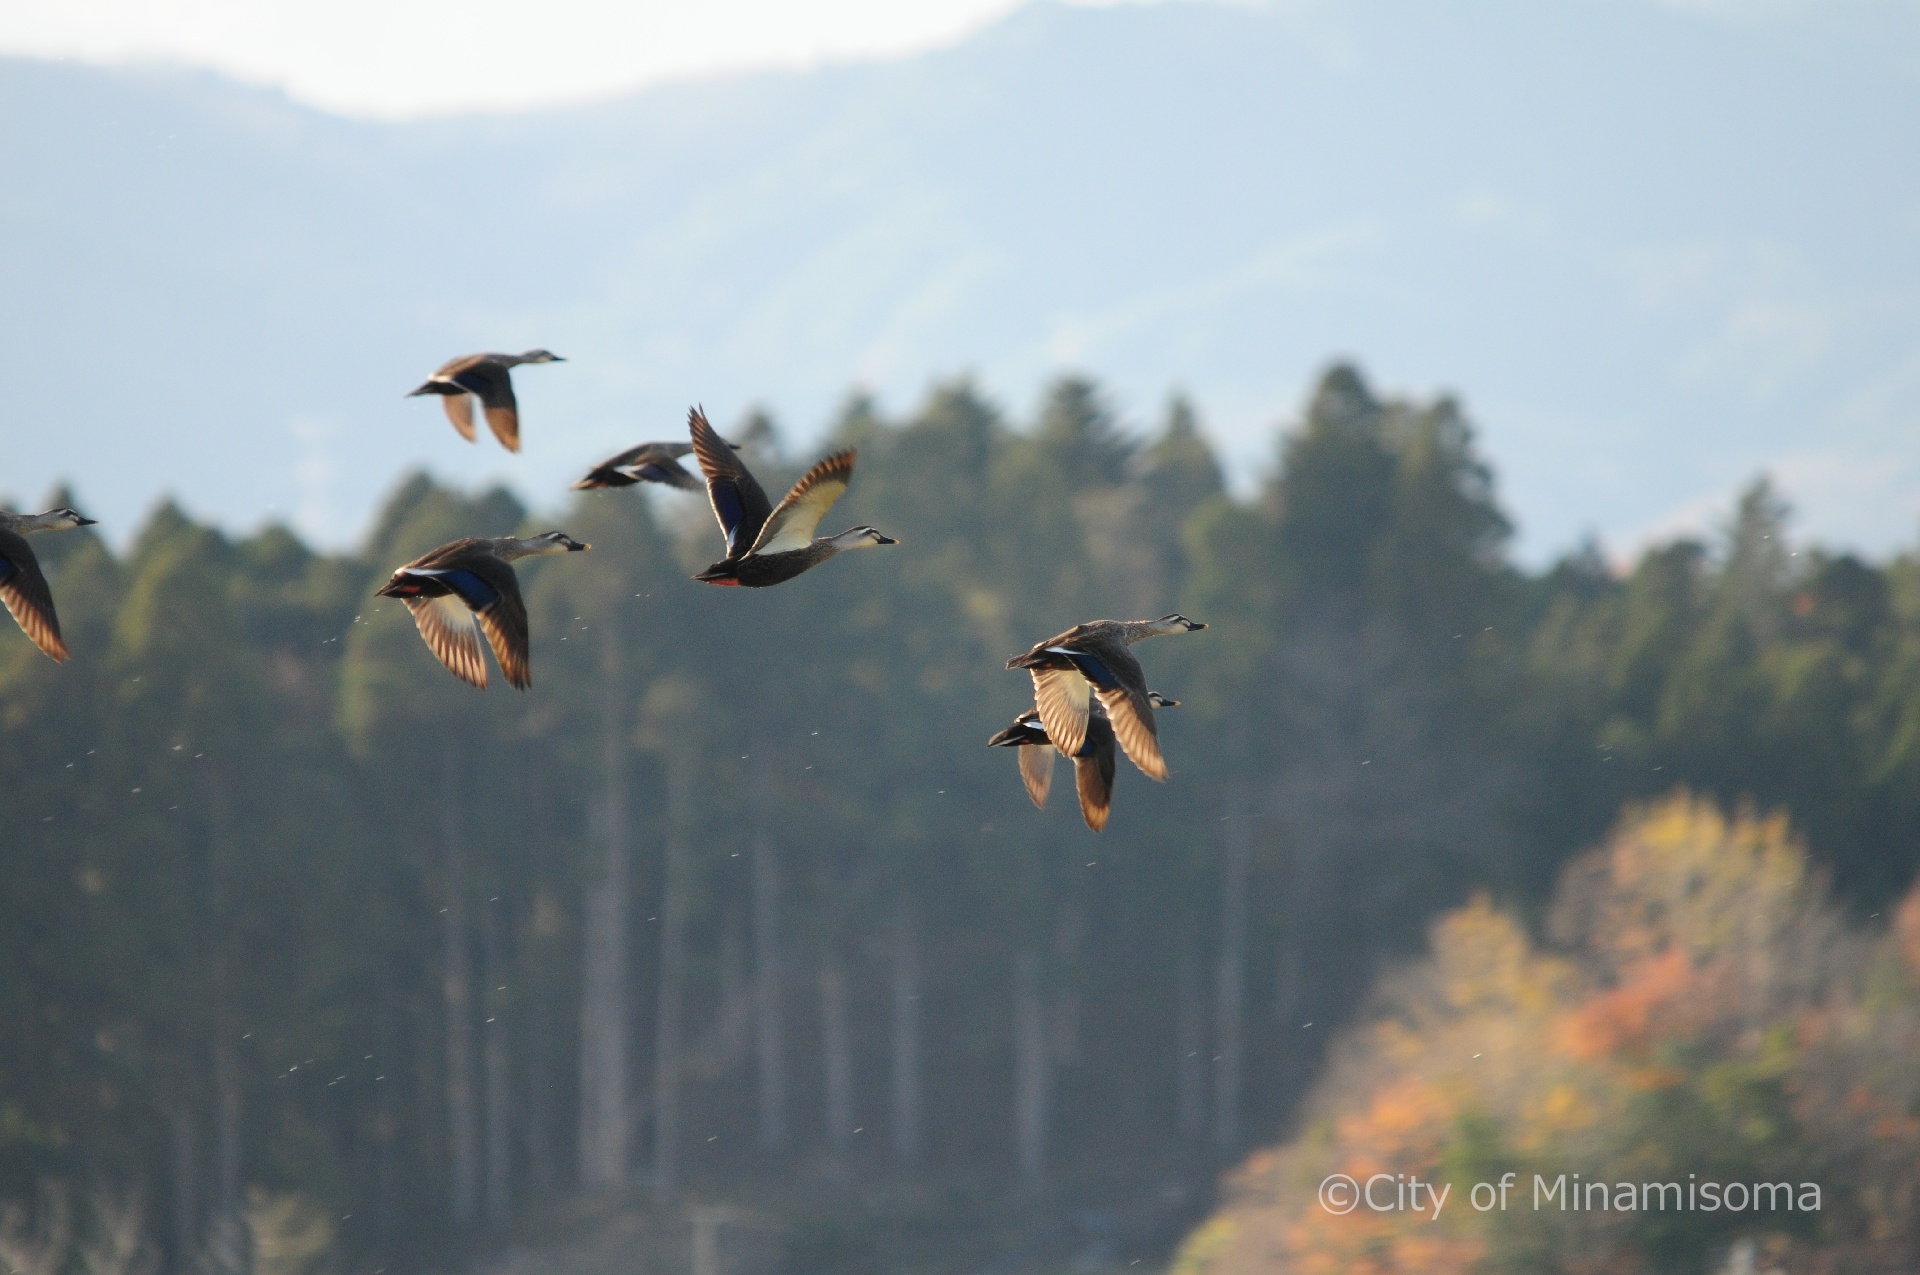 小高区村上周辺の水鳥の様子。水面から飛び立った7羽の水鳥が、山と雑木林を背景に羽ばたいている。